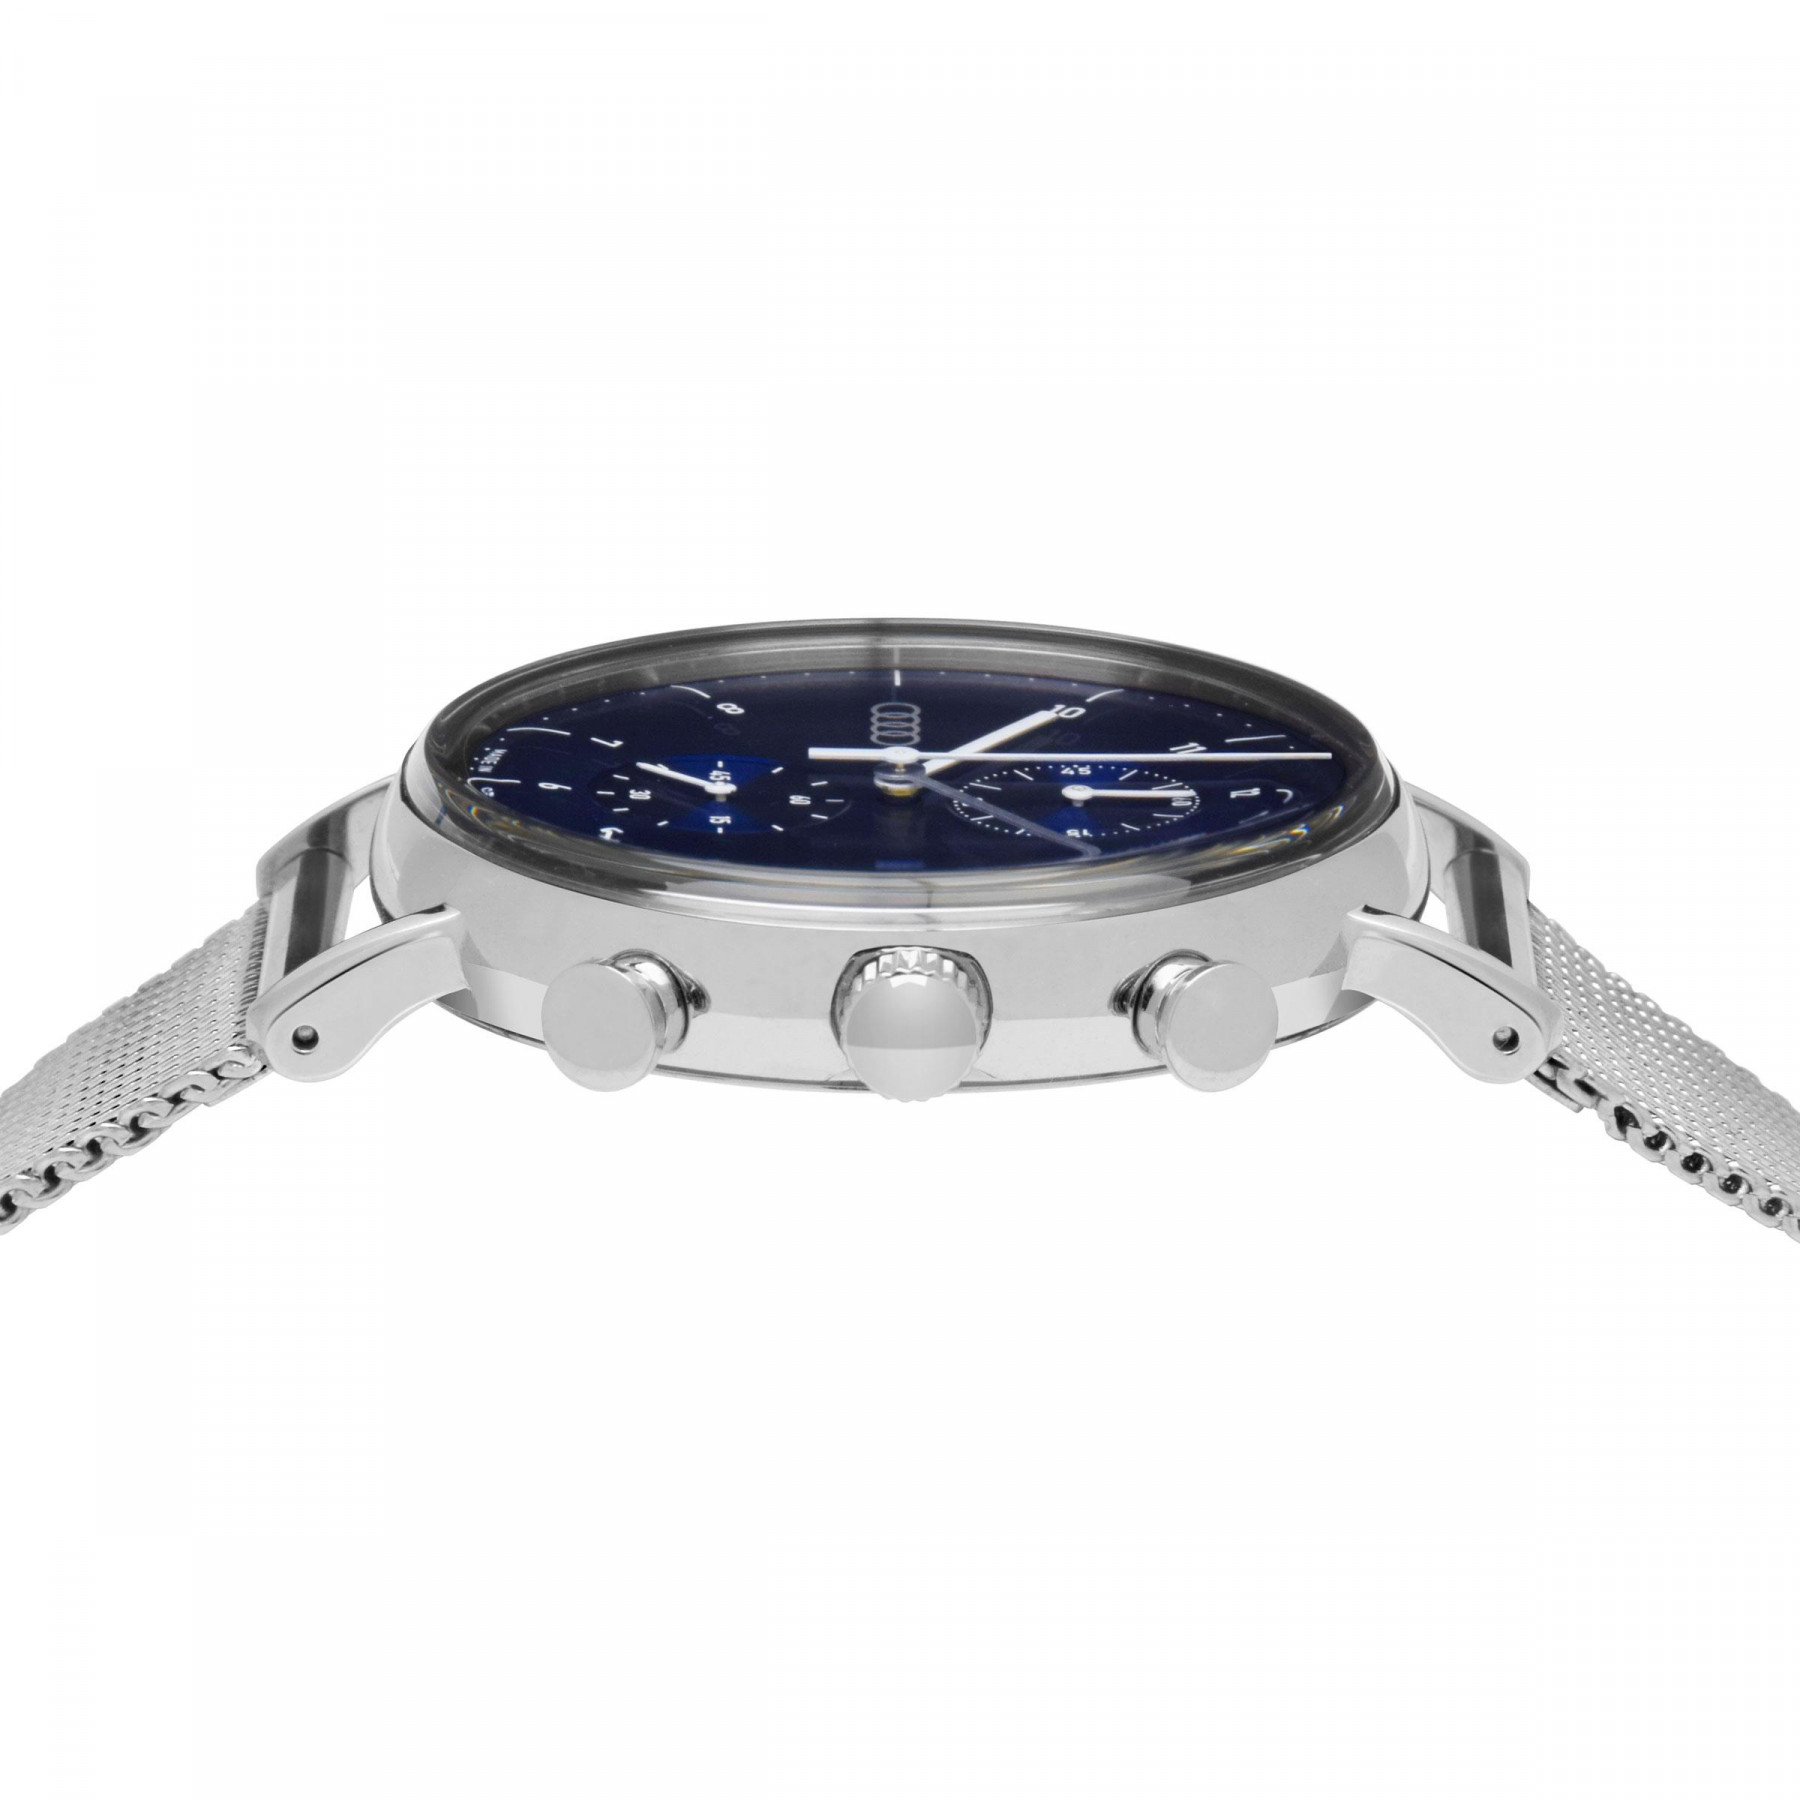 Audi Chronograph Armbanduhr Uhr silber nachtblau